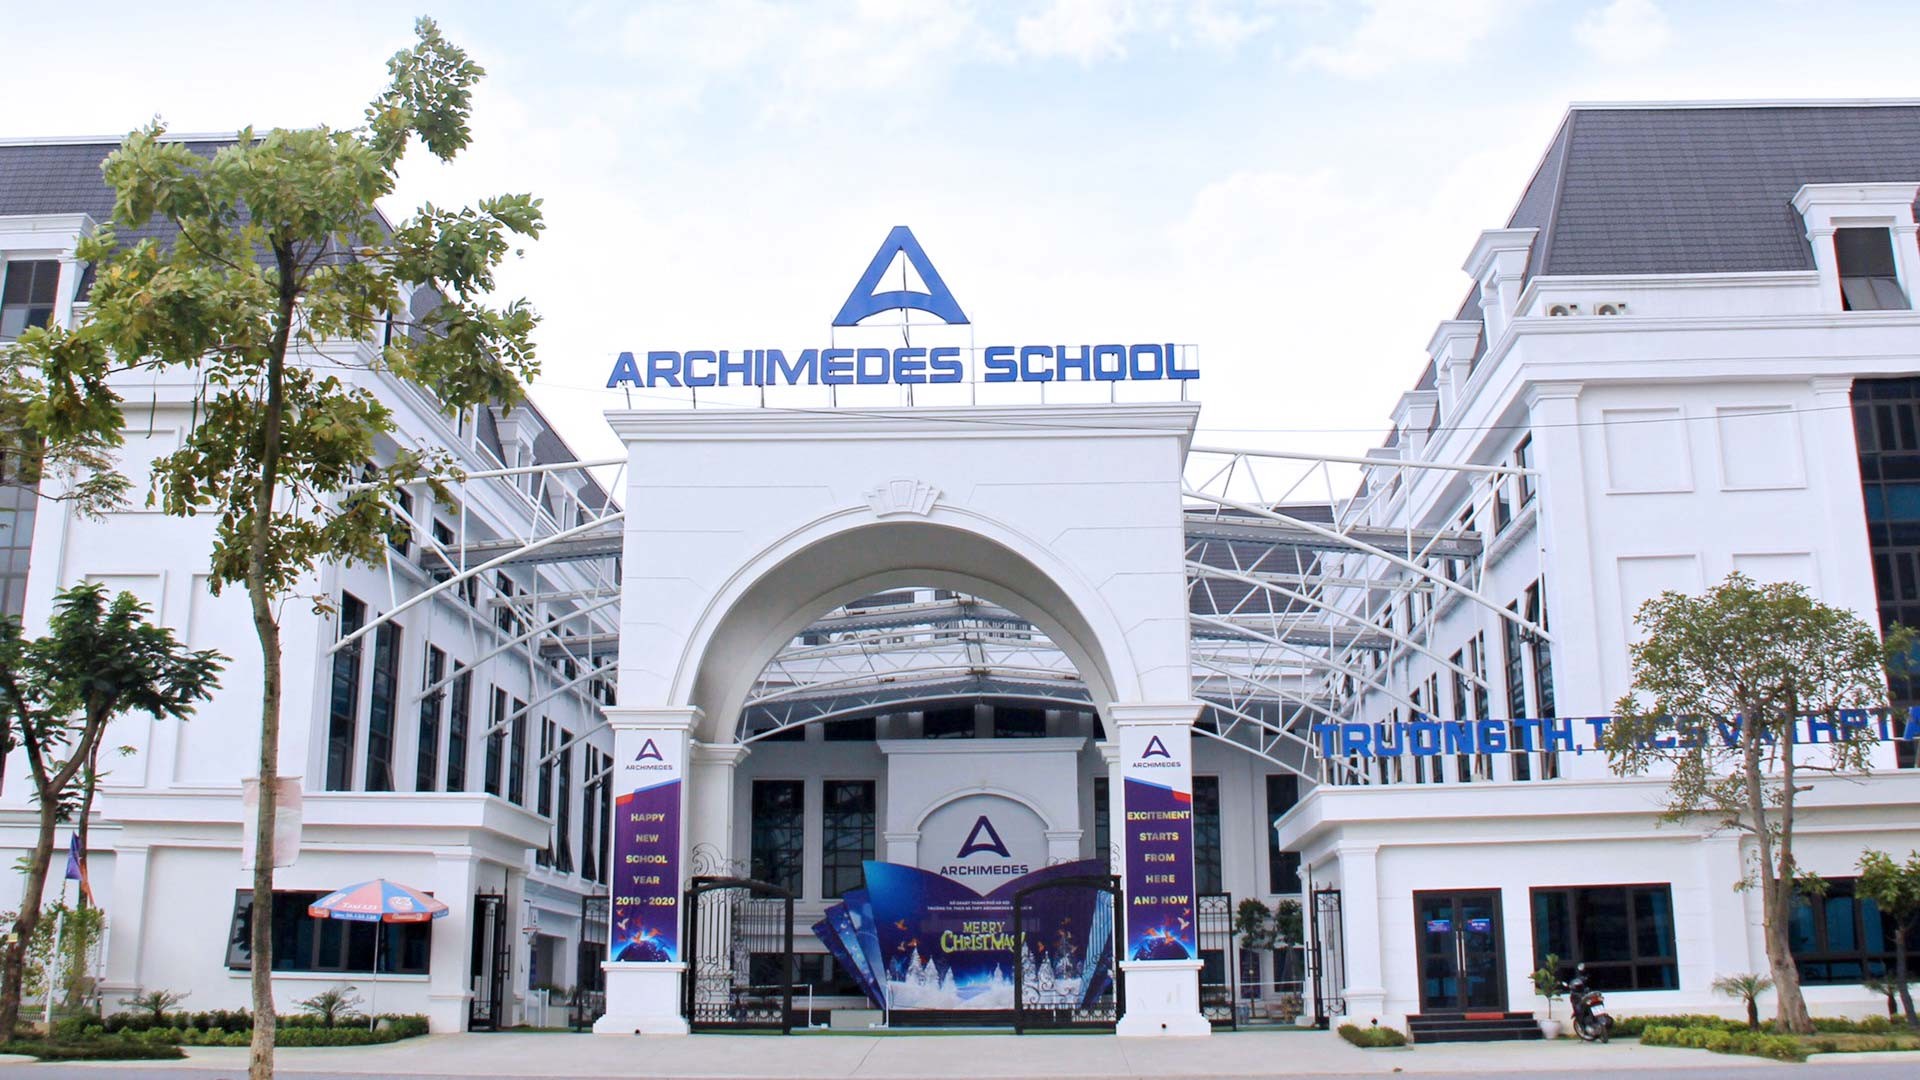 Đâu là điểm khác biệt trong chương trình giáo dục của Tiểu học Archimedes?